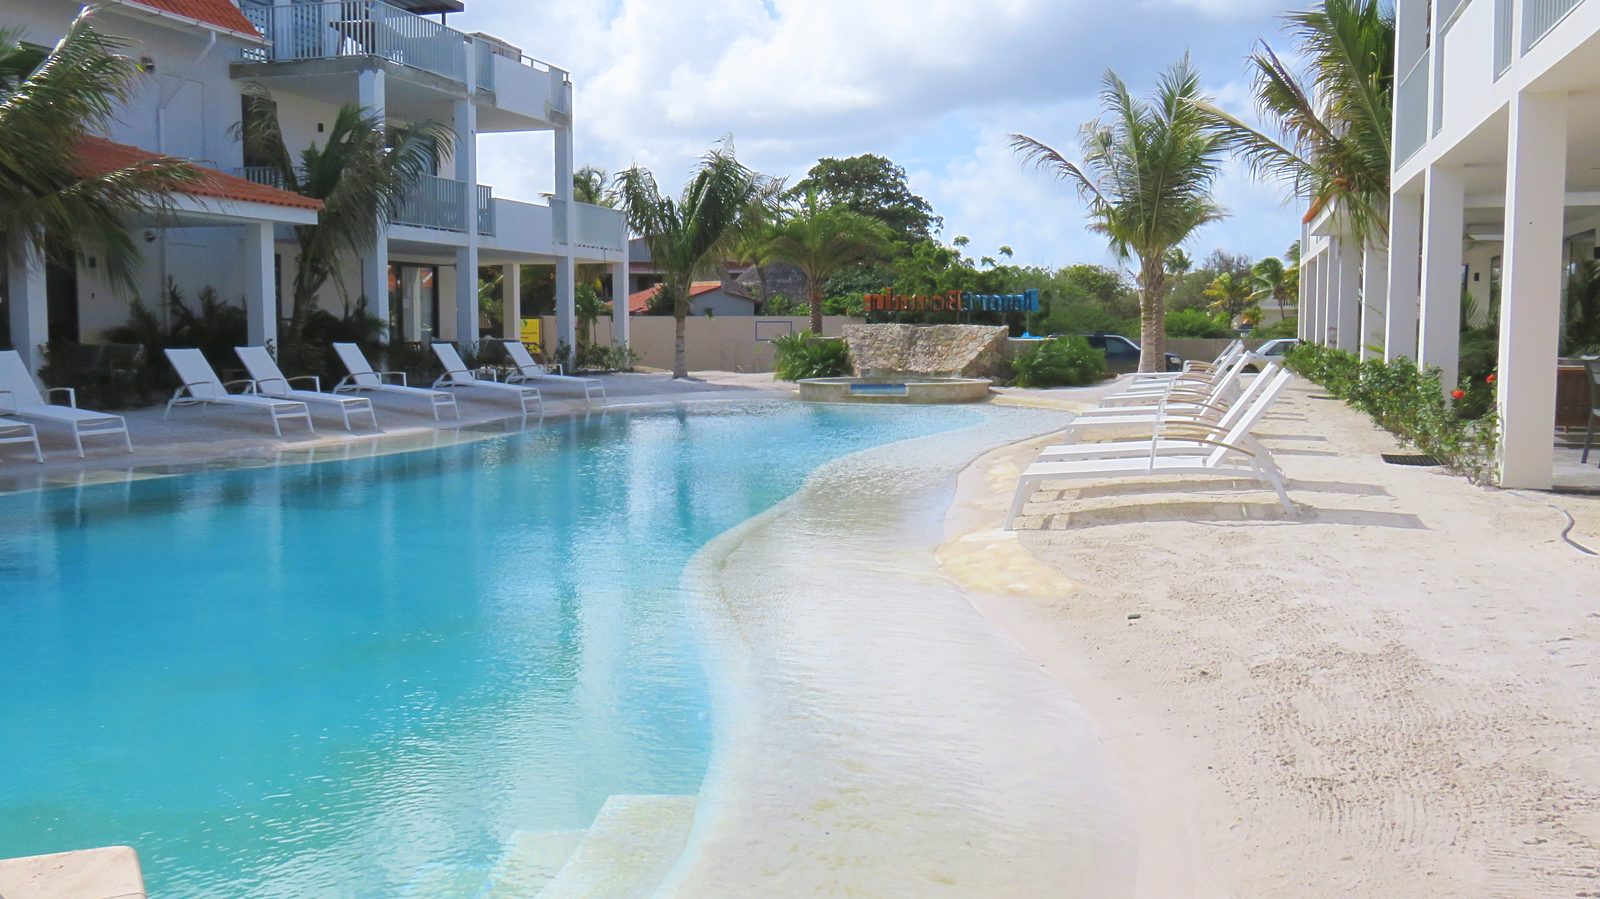 Explora la piscina de Resort Bonaire. Esta piscina de playa es donde podrás relajarte y disfrutar del clima. Los niños también se divertirán mucho.

